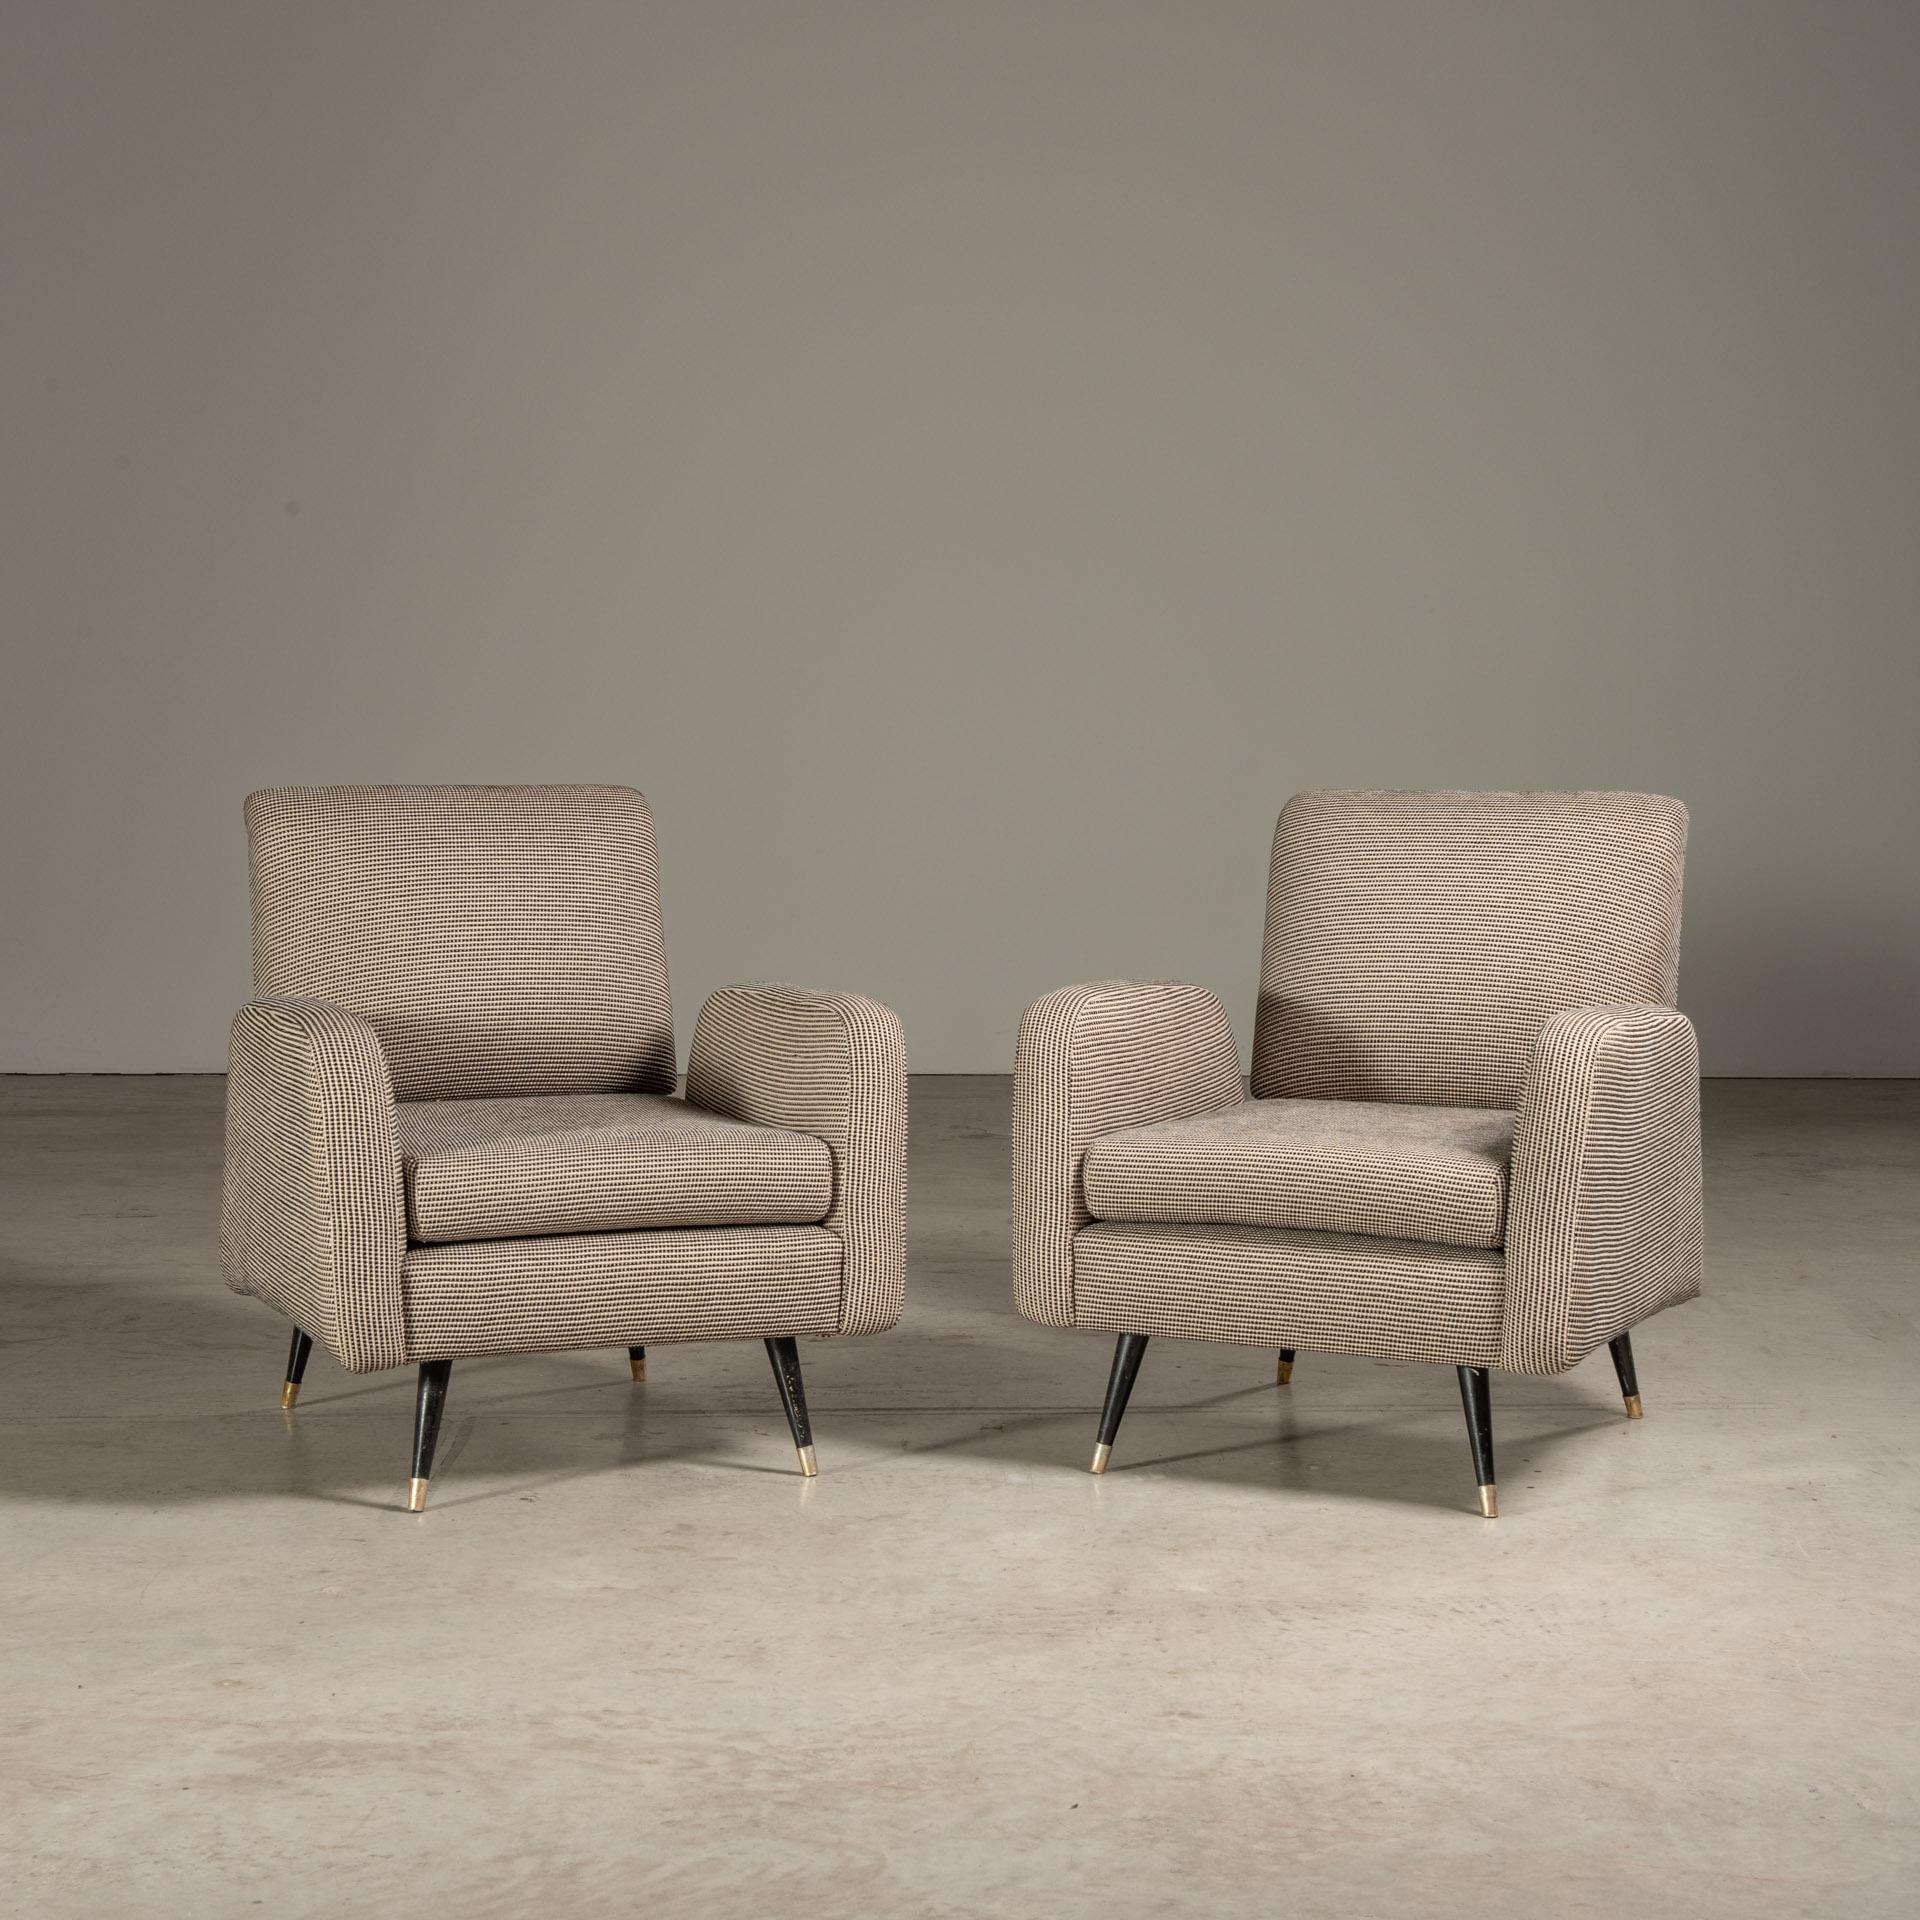 Cette paire de chaises longues conçues par Martin Eisler met en valeur le style brésilien moderne du milieu du siècle avec un design classique mais innovant qui harmonise la forme et la fonction.

Ces pièces, datant des années 1950 ou 1960,